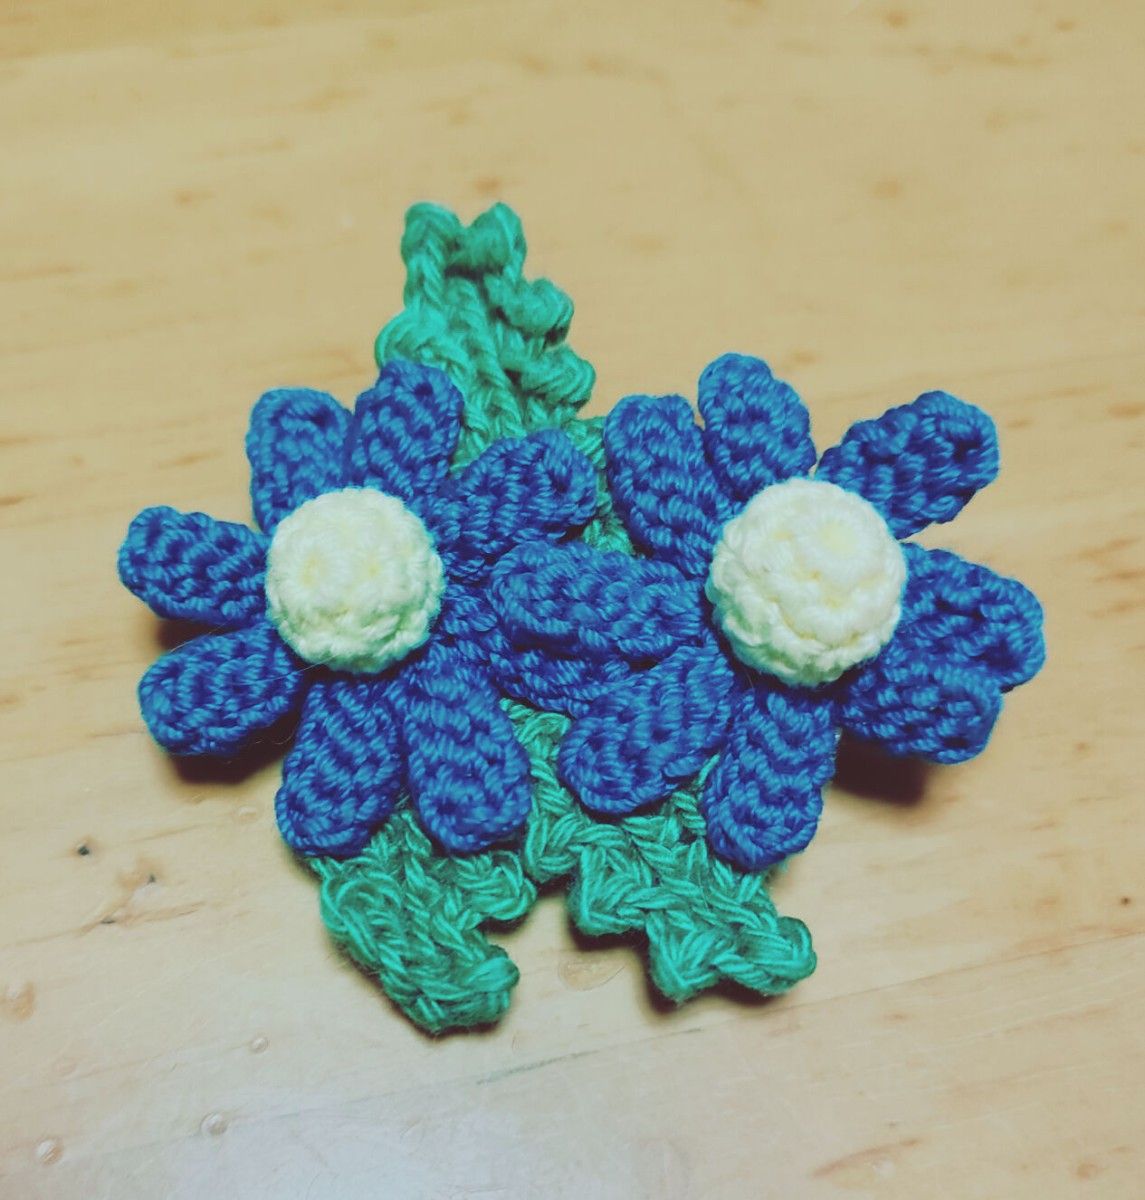 レース編みブローチ/レース編み/お花/北欧風/可愛い ハンドメイド 小さなお花 ブローチ